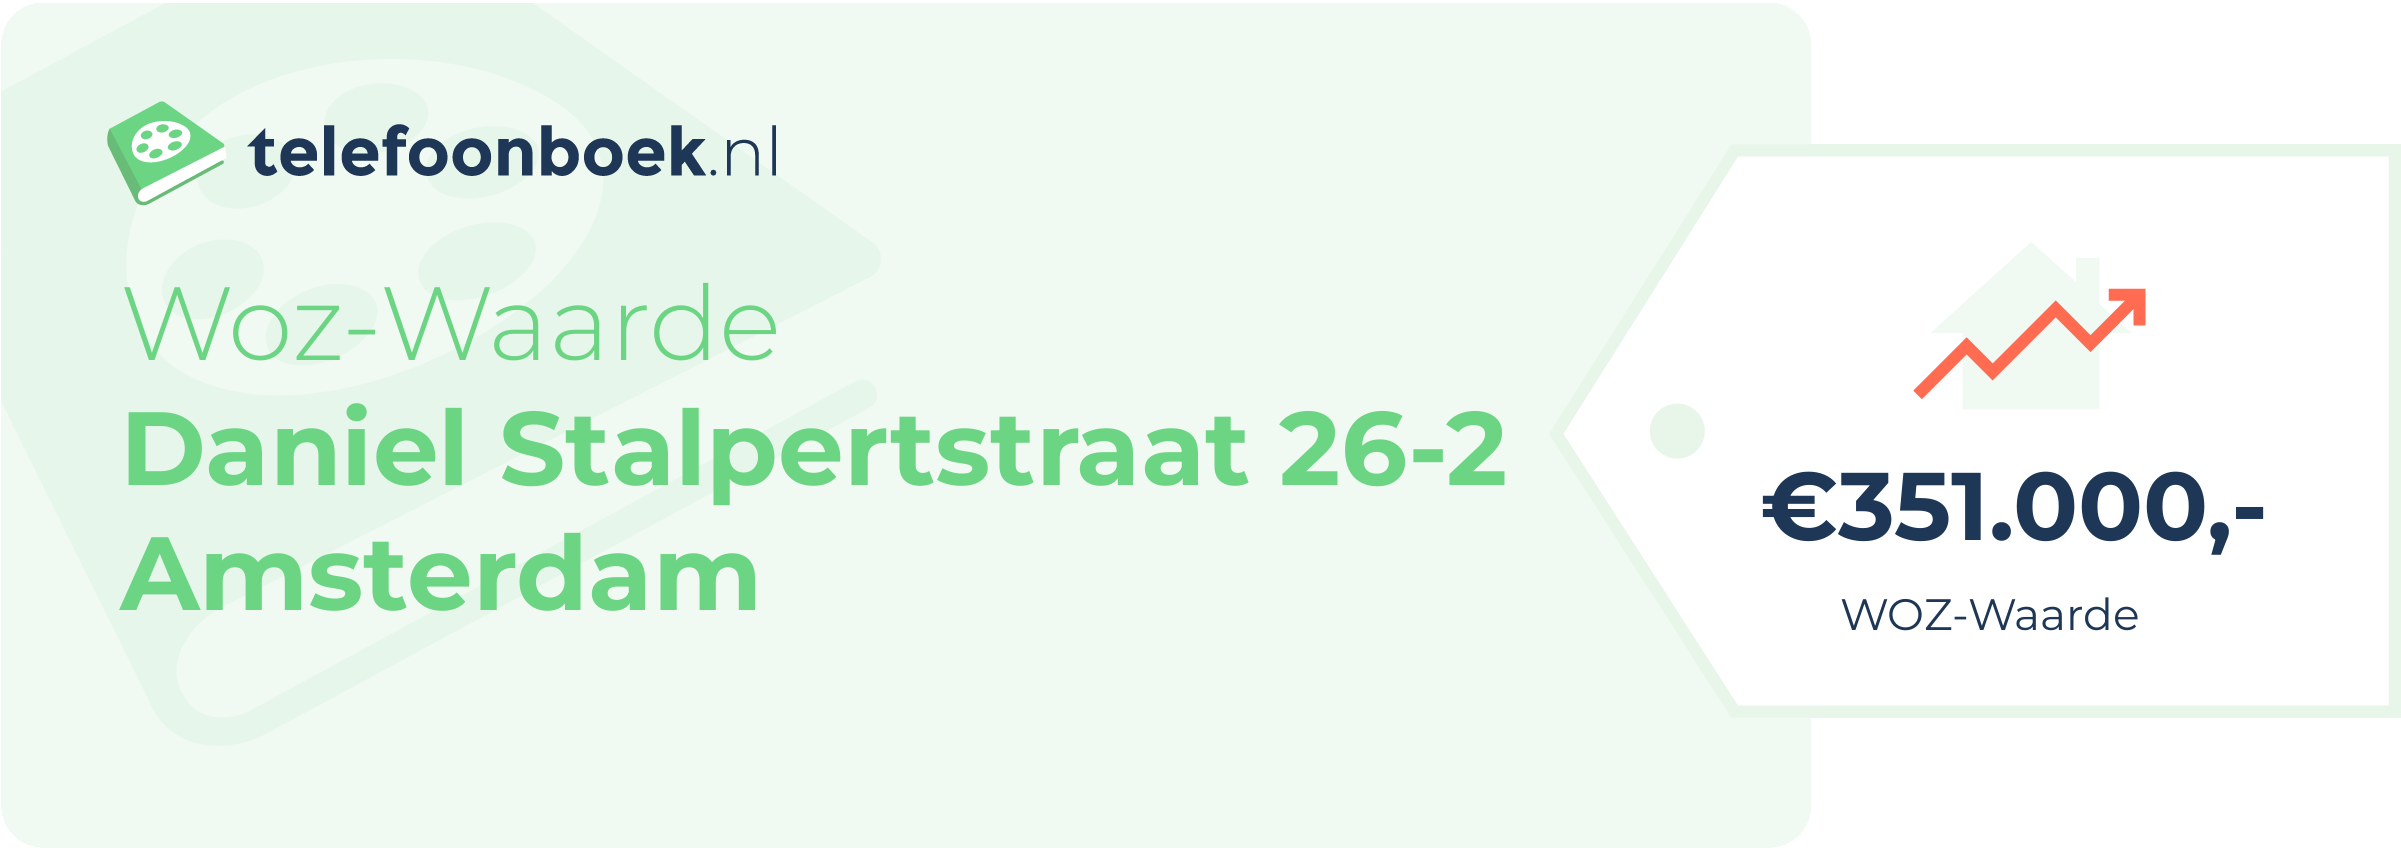 WOZ-waarde Daniel Stalpertstraat 26-2 Amsterdam